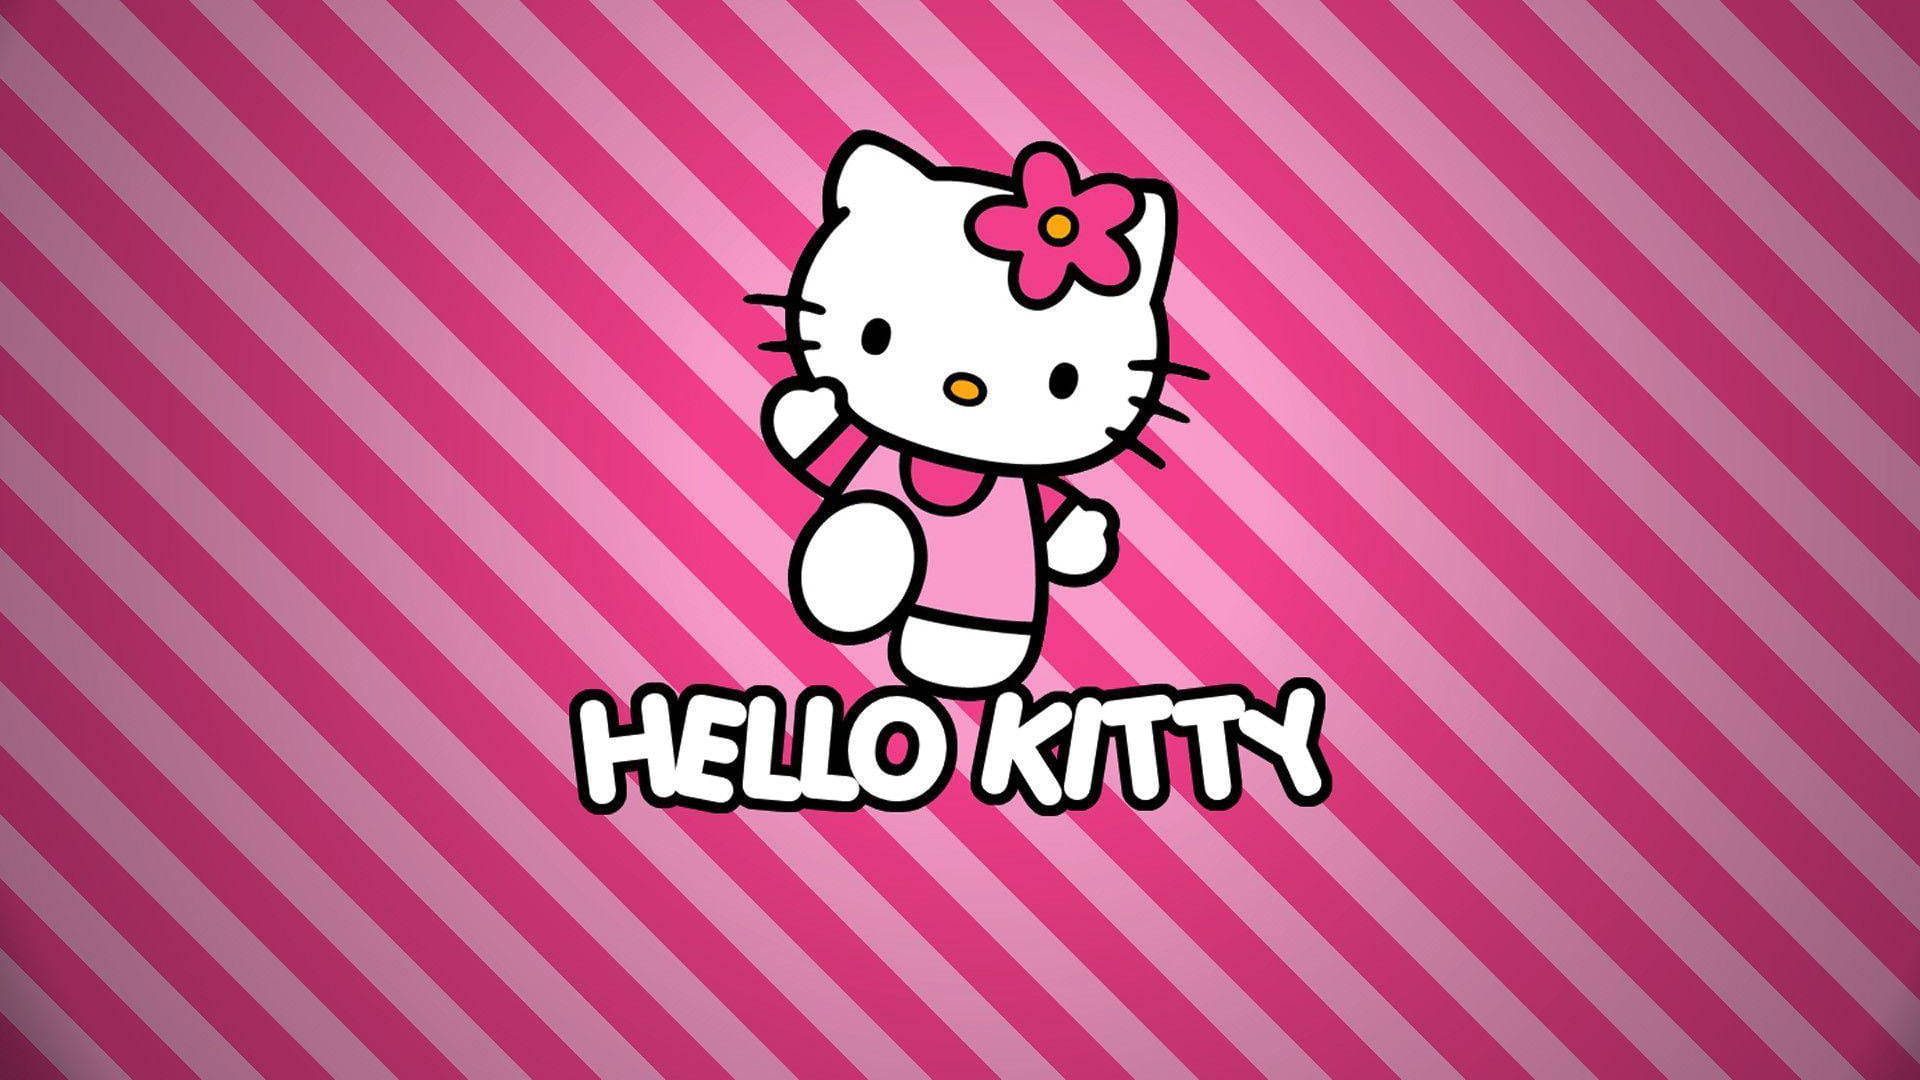 Fondode Pantalla De Hello Kitty Rosa Con Rayas Fondo de pantalla